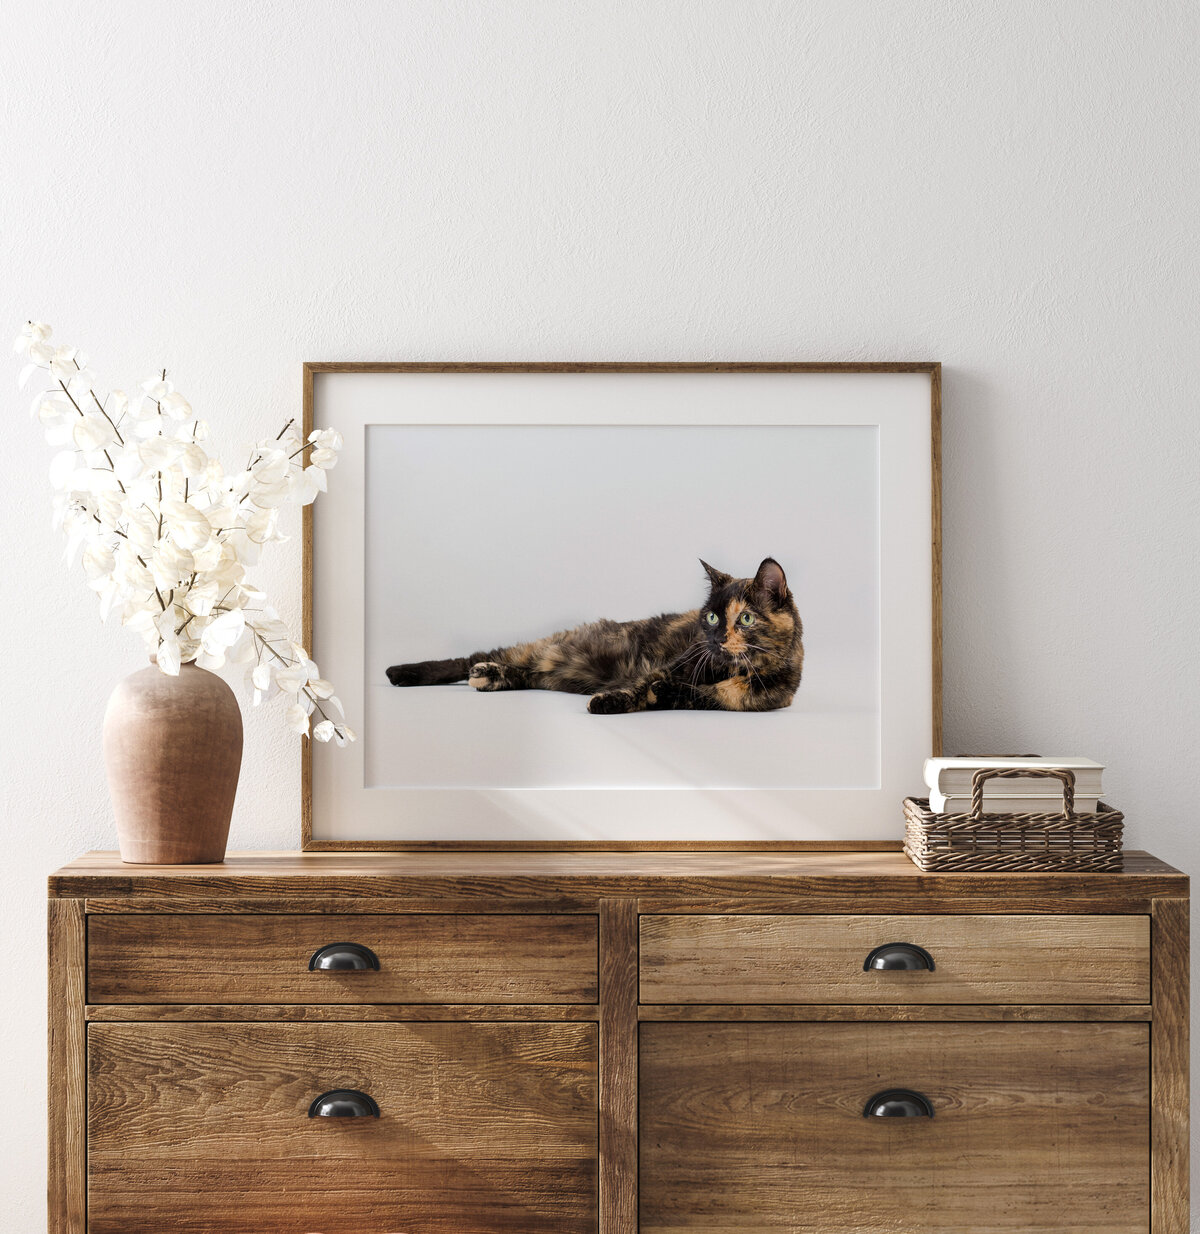 Wooden Frame on dresser cat copy